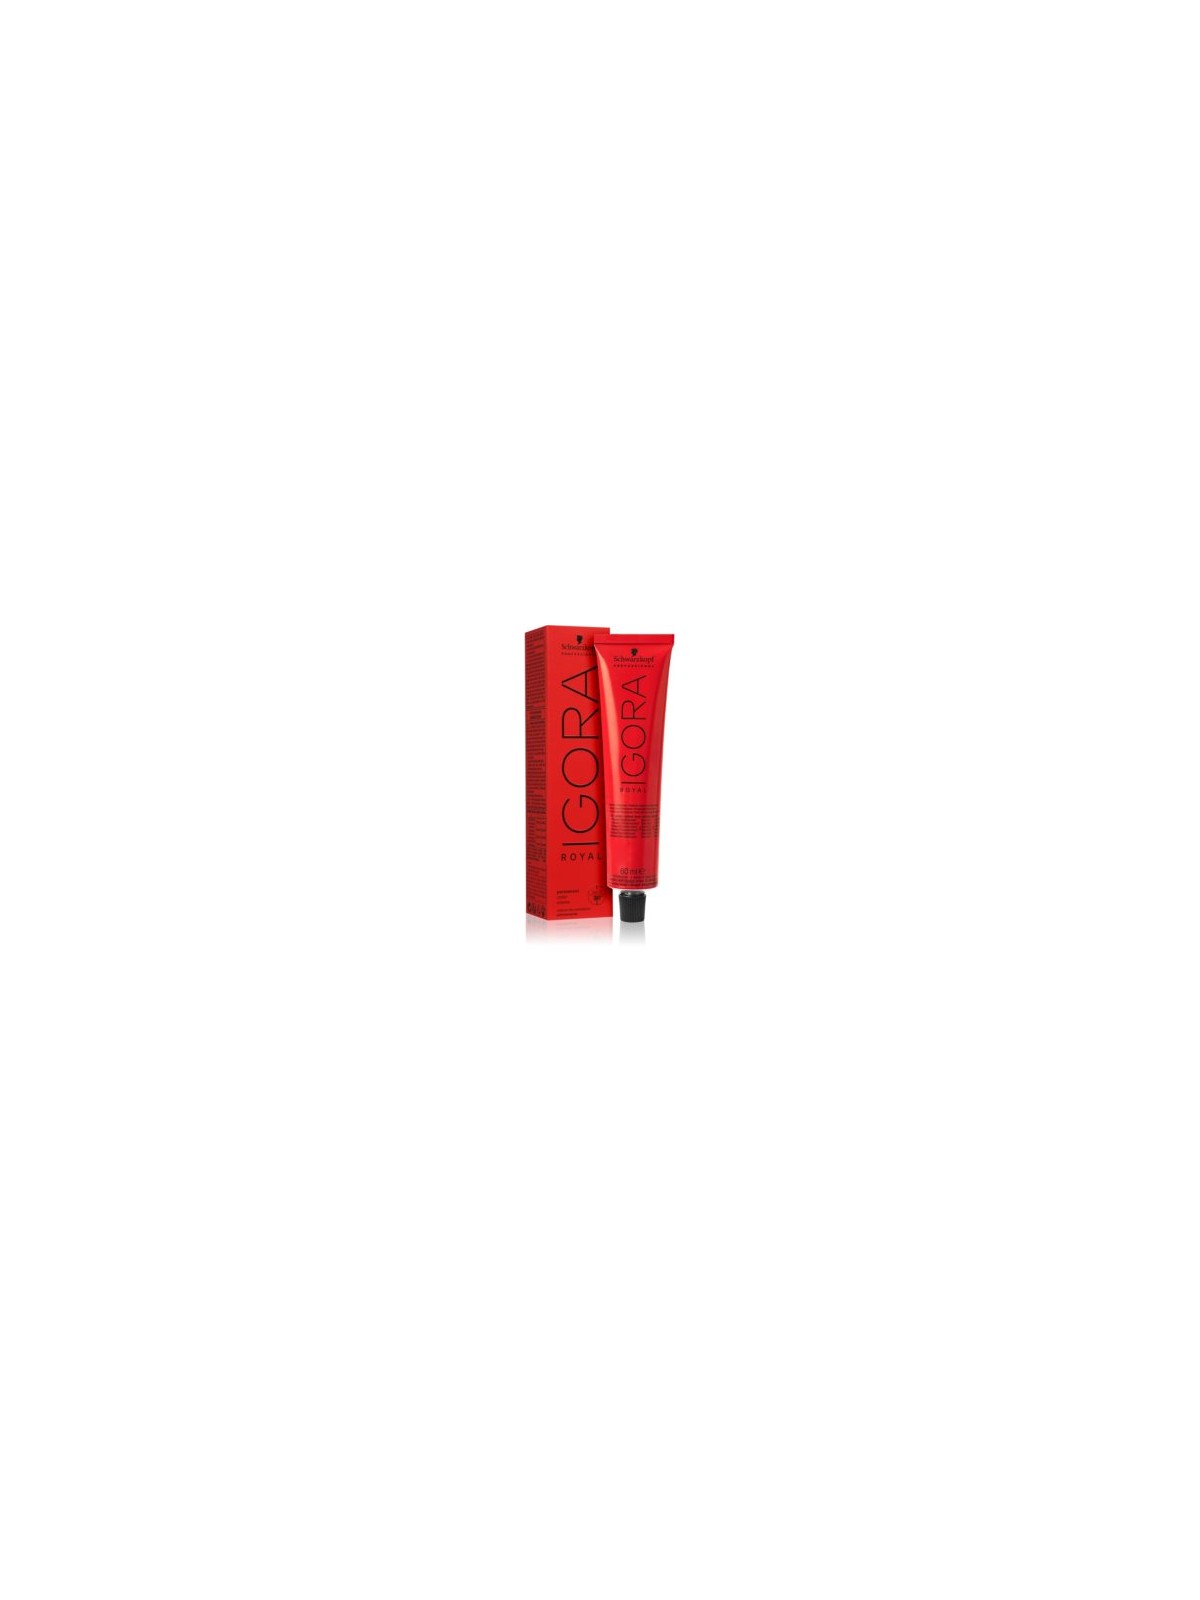 Comprar Schwarzkopf Tinte Permanente IGORA ROYAL 60ml. Nº 4-88 Castaño medio rojo intenso en Tintes con amoniaco por sólo 13,82 € o un precio específico de 8,29 € en Thalie Care